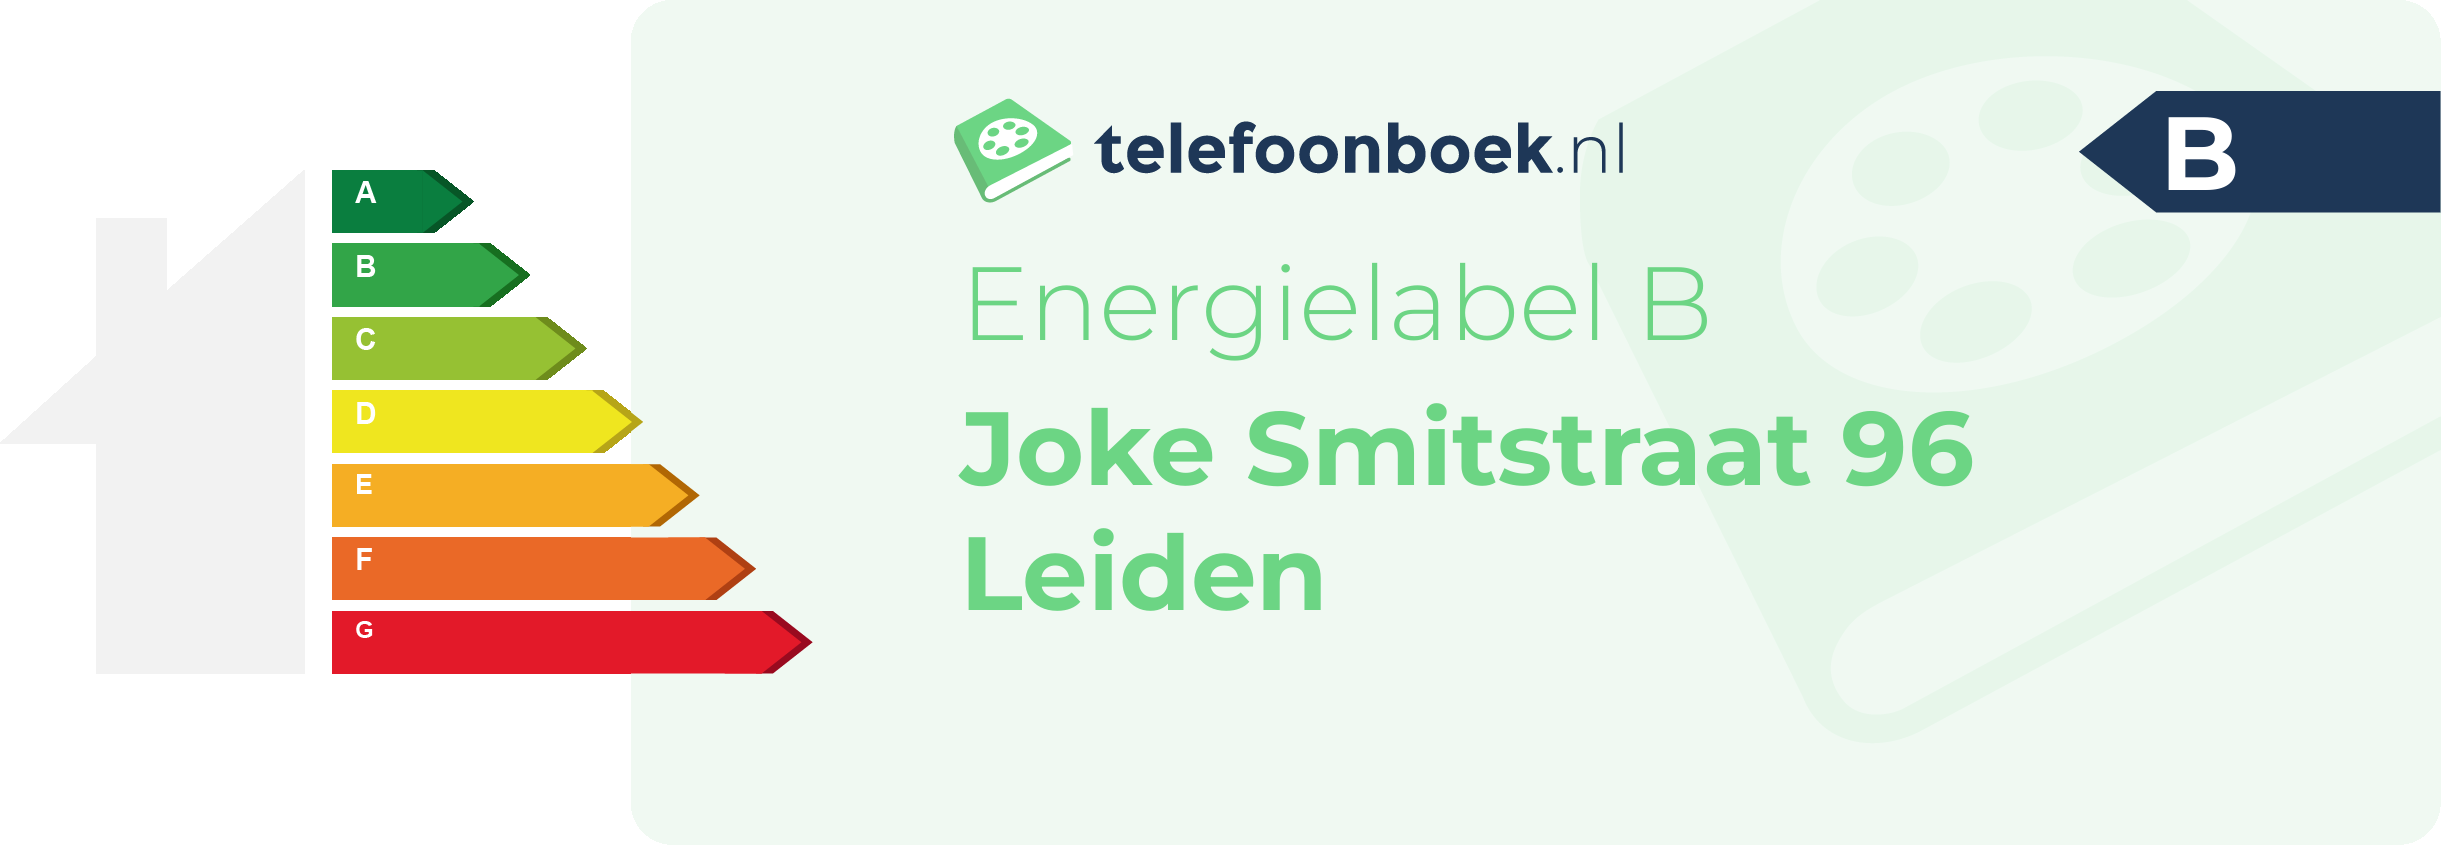 Energielabel Joke Smitstraat 96 Leiden